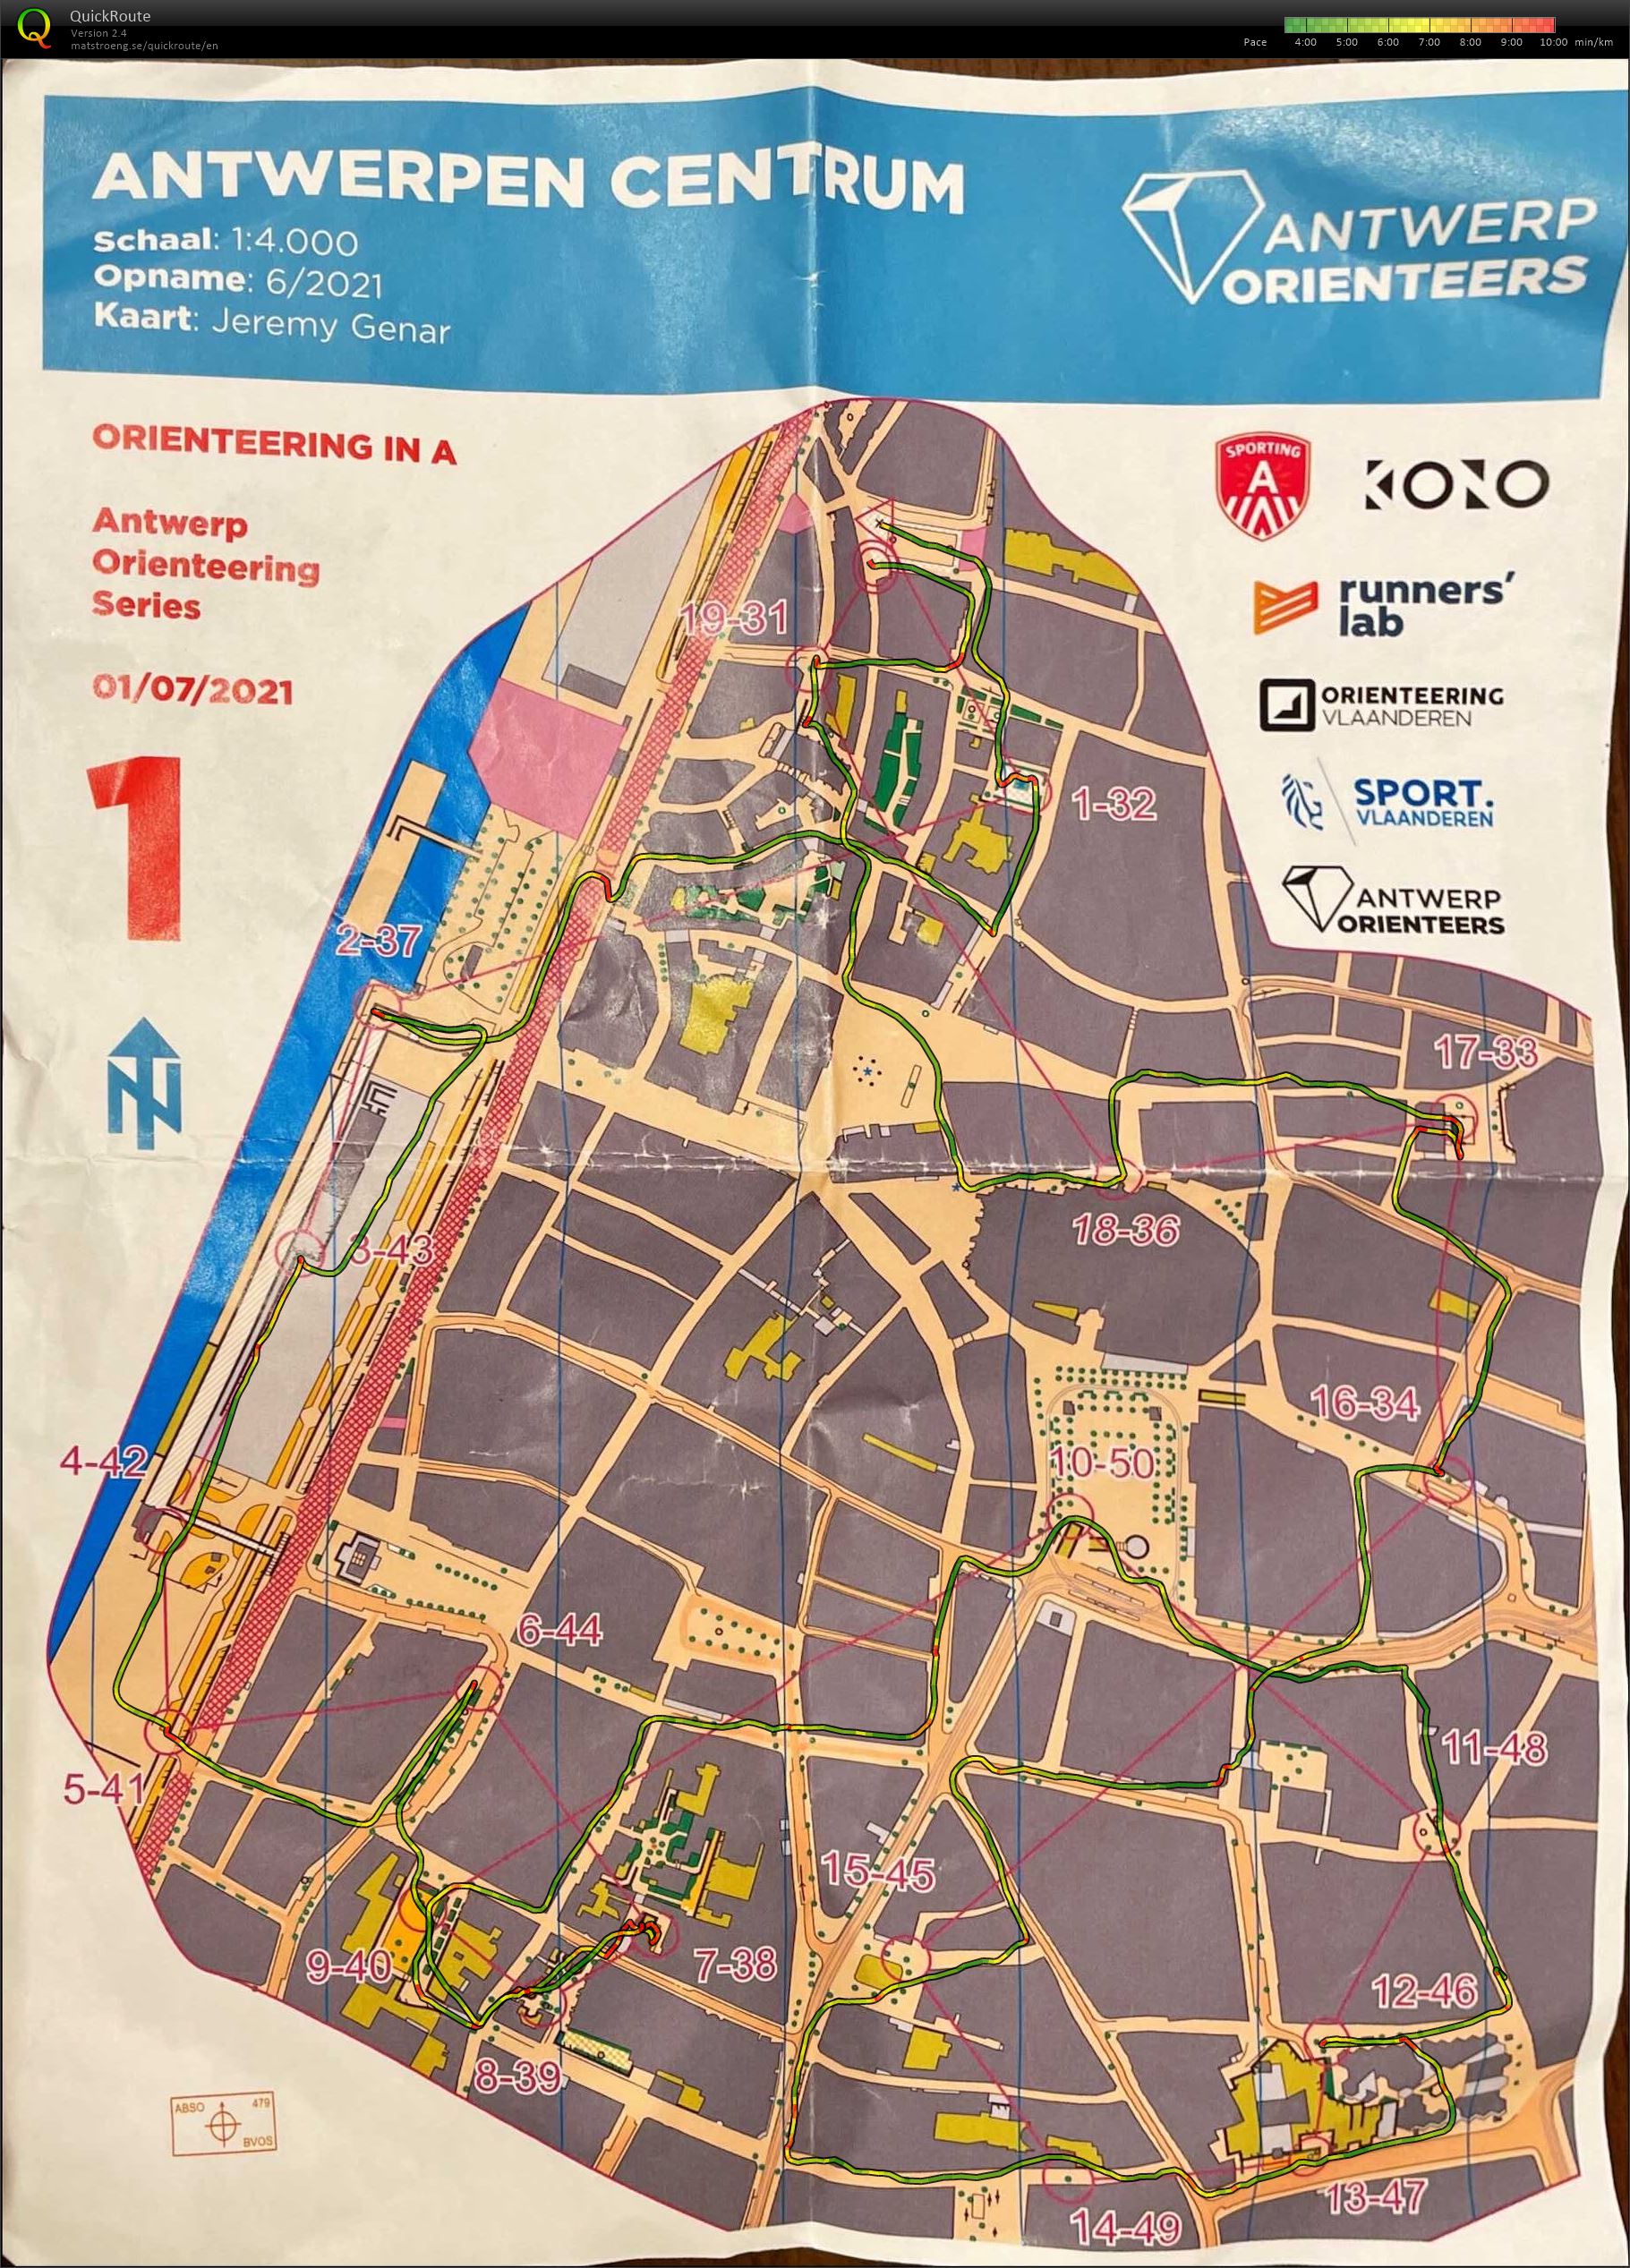 Antwerp Orienteering Series - Antwerpen Centrum - 5K (2021-07-01)